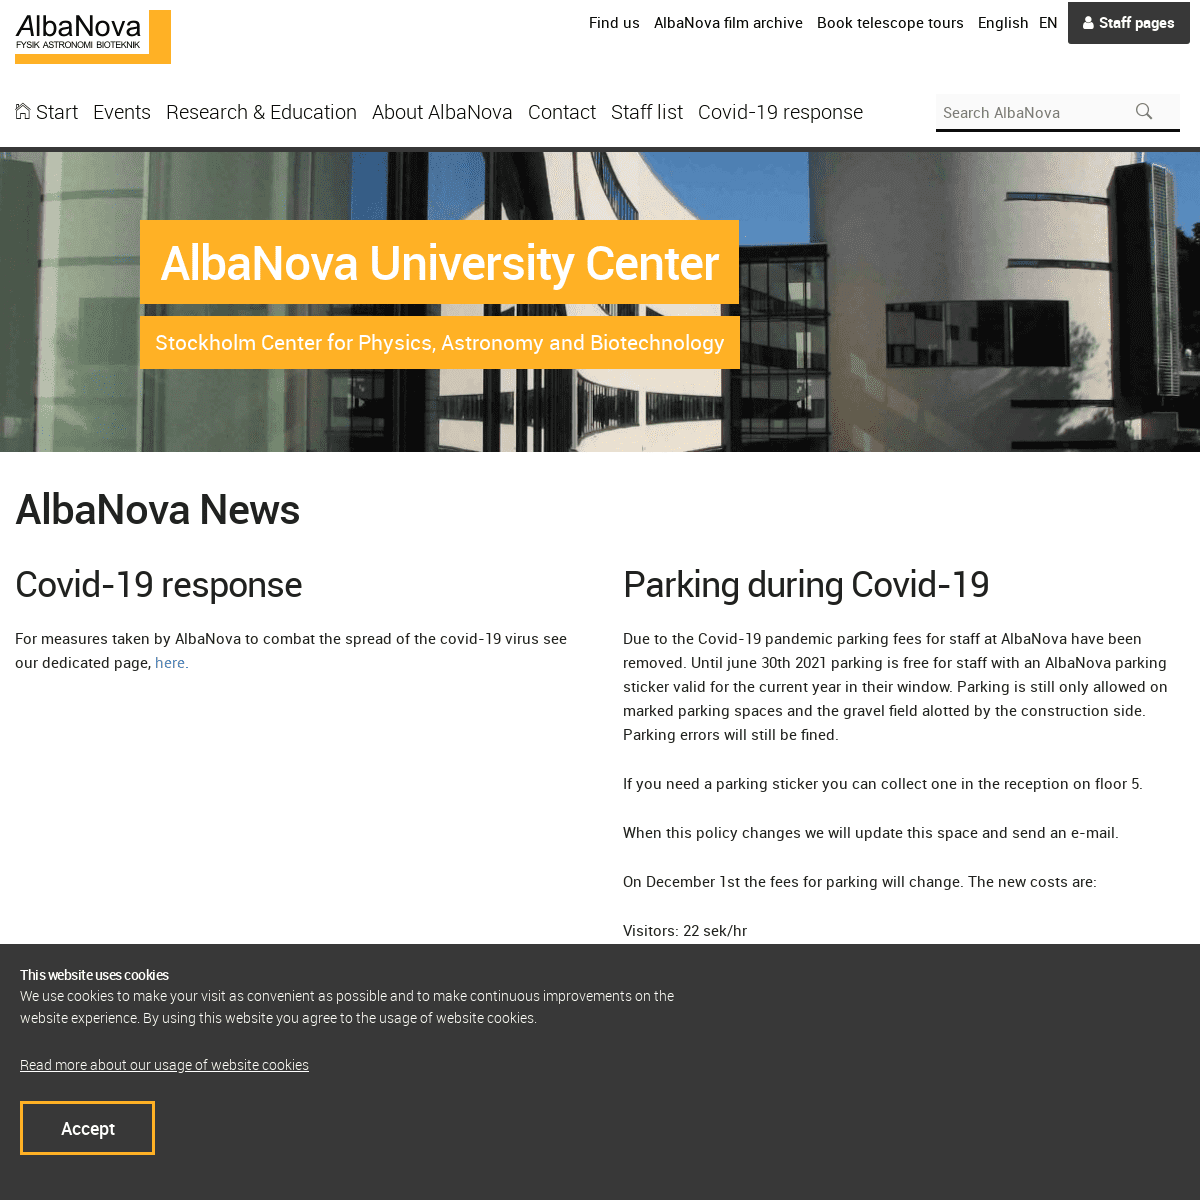 A complete backup of https://albanova.se